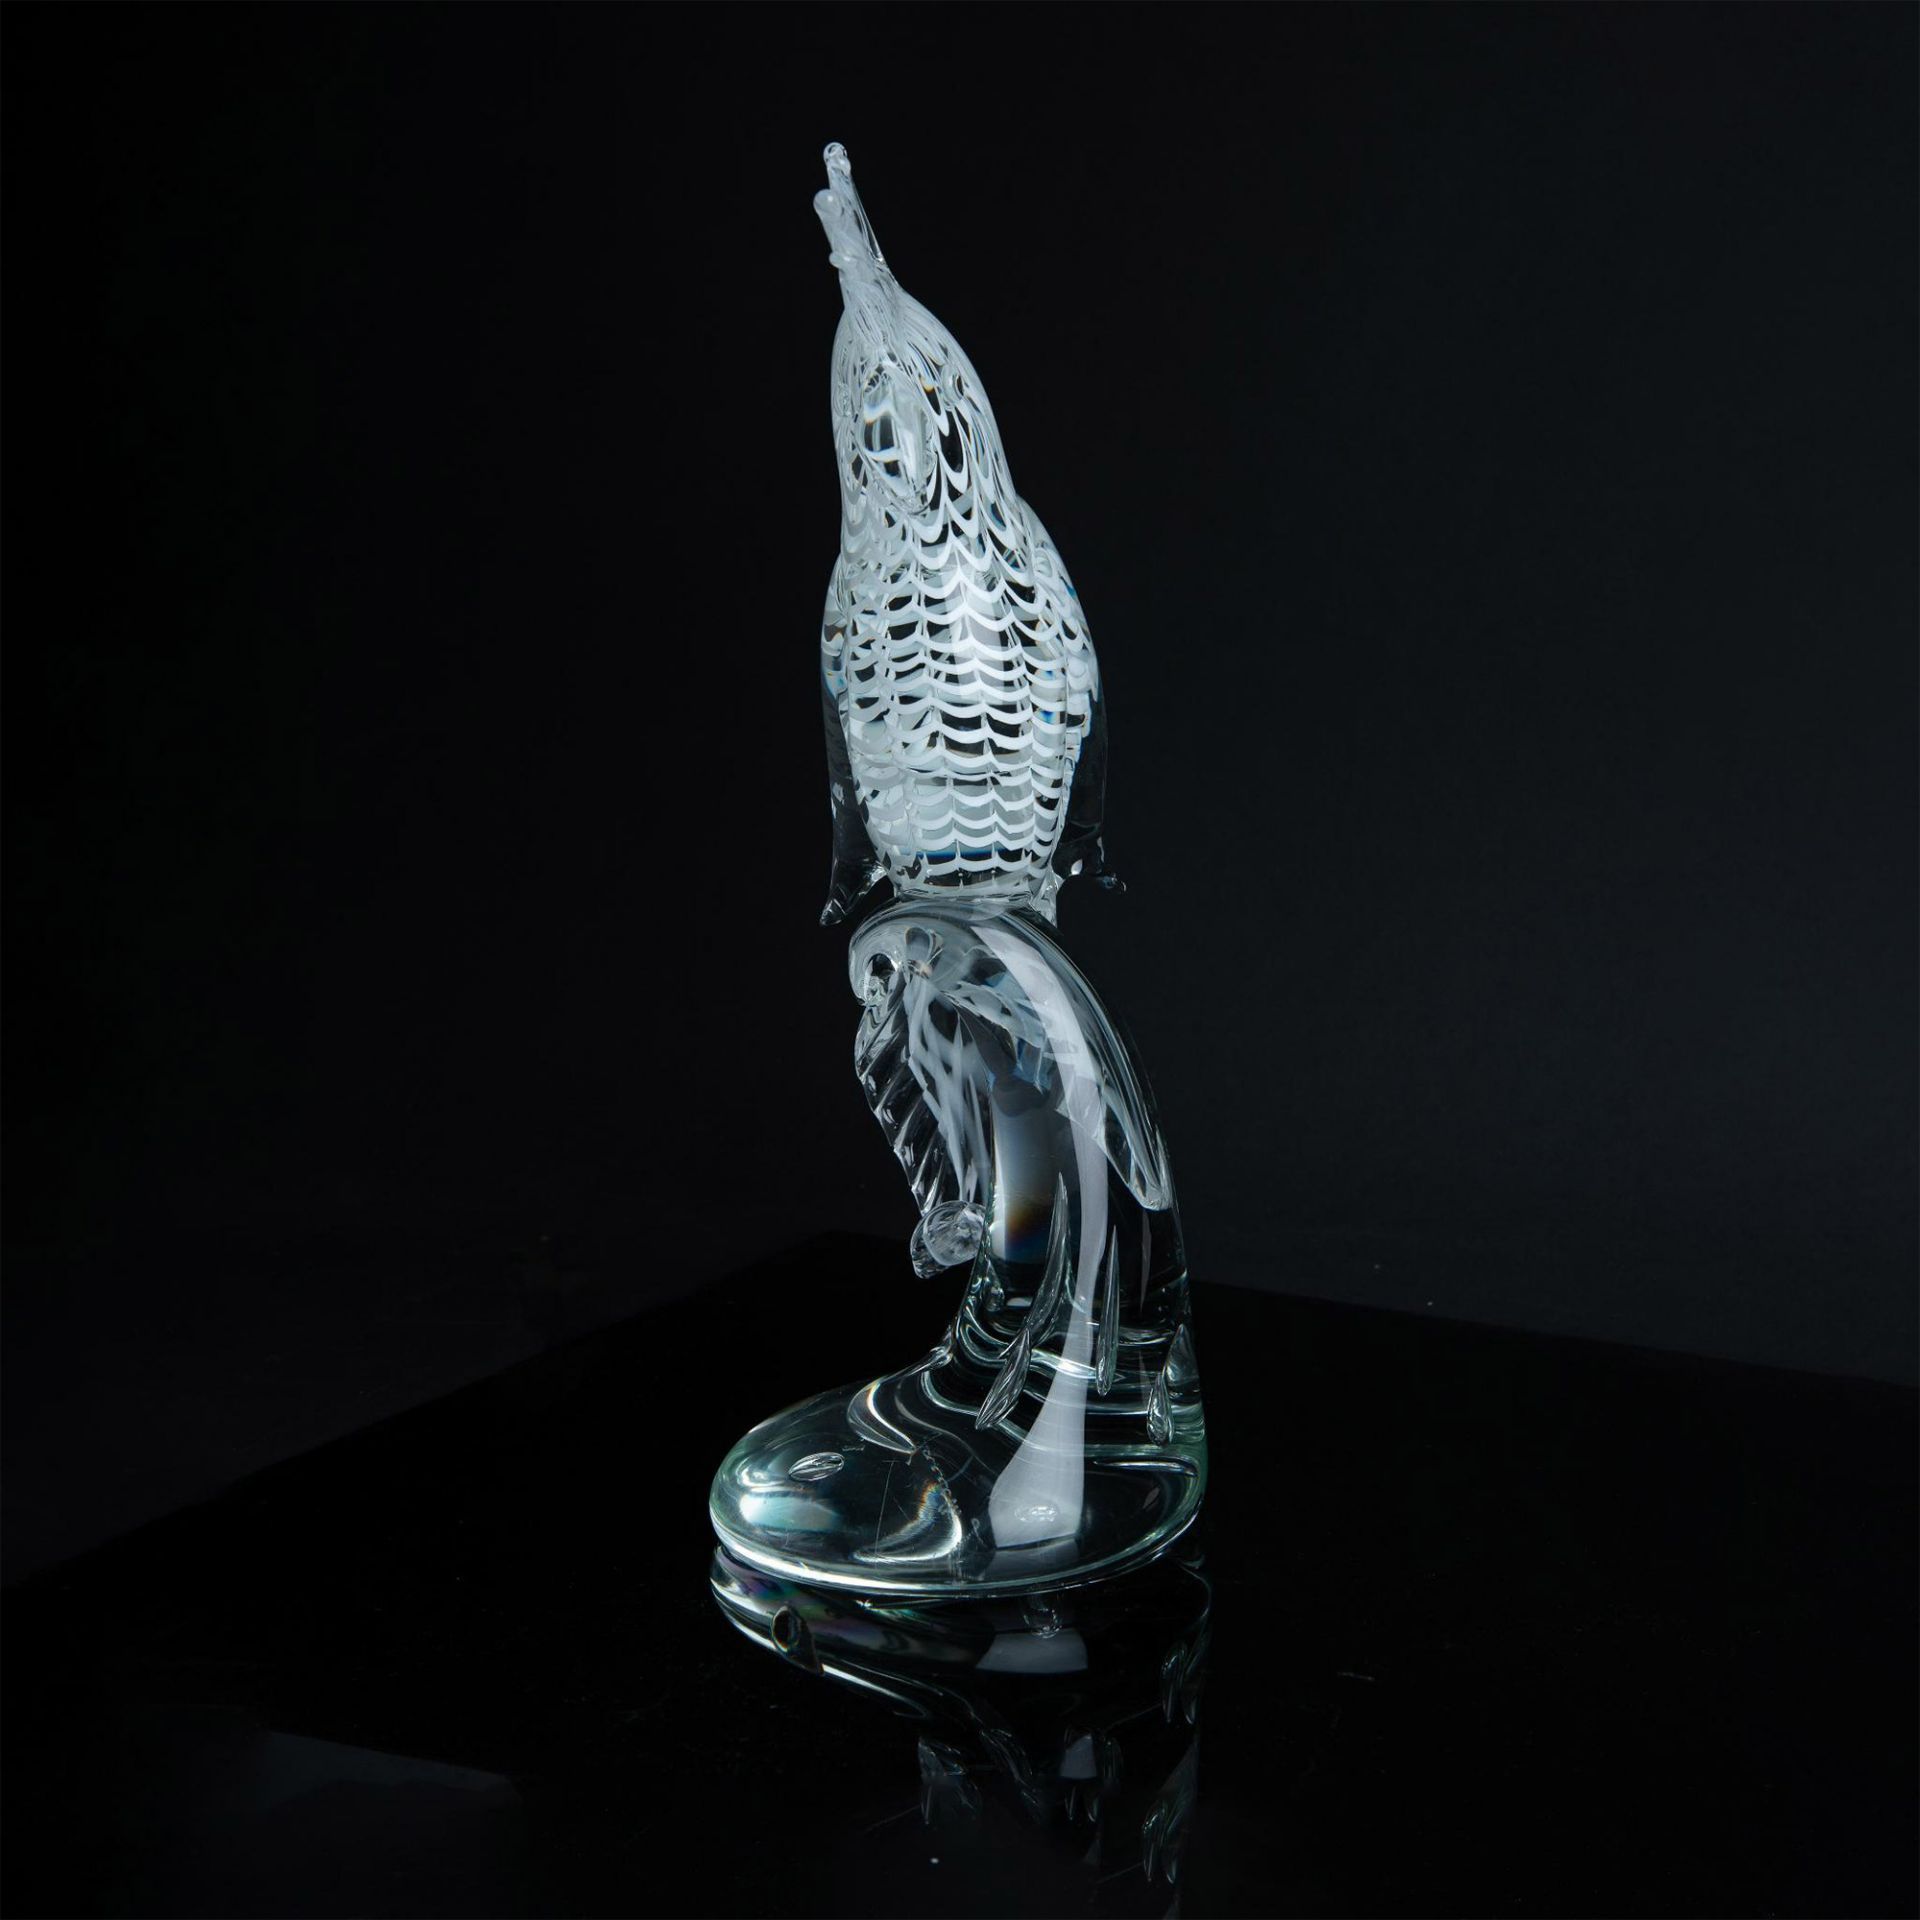 Murano Licio Zanetti Cockatoo Art Glass Sculpture, Signed - Image 4 of 6